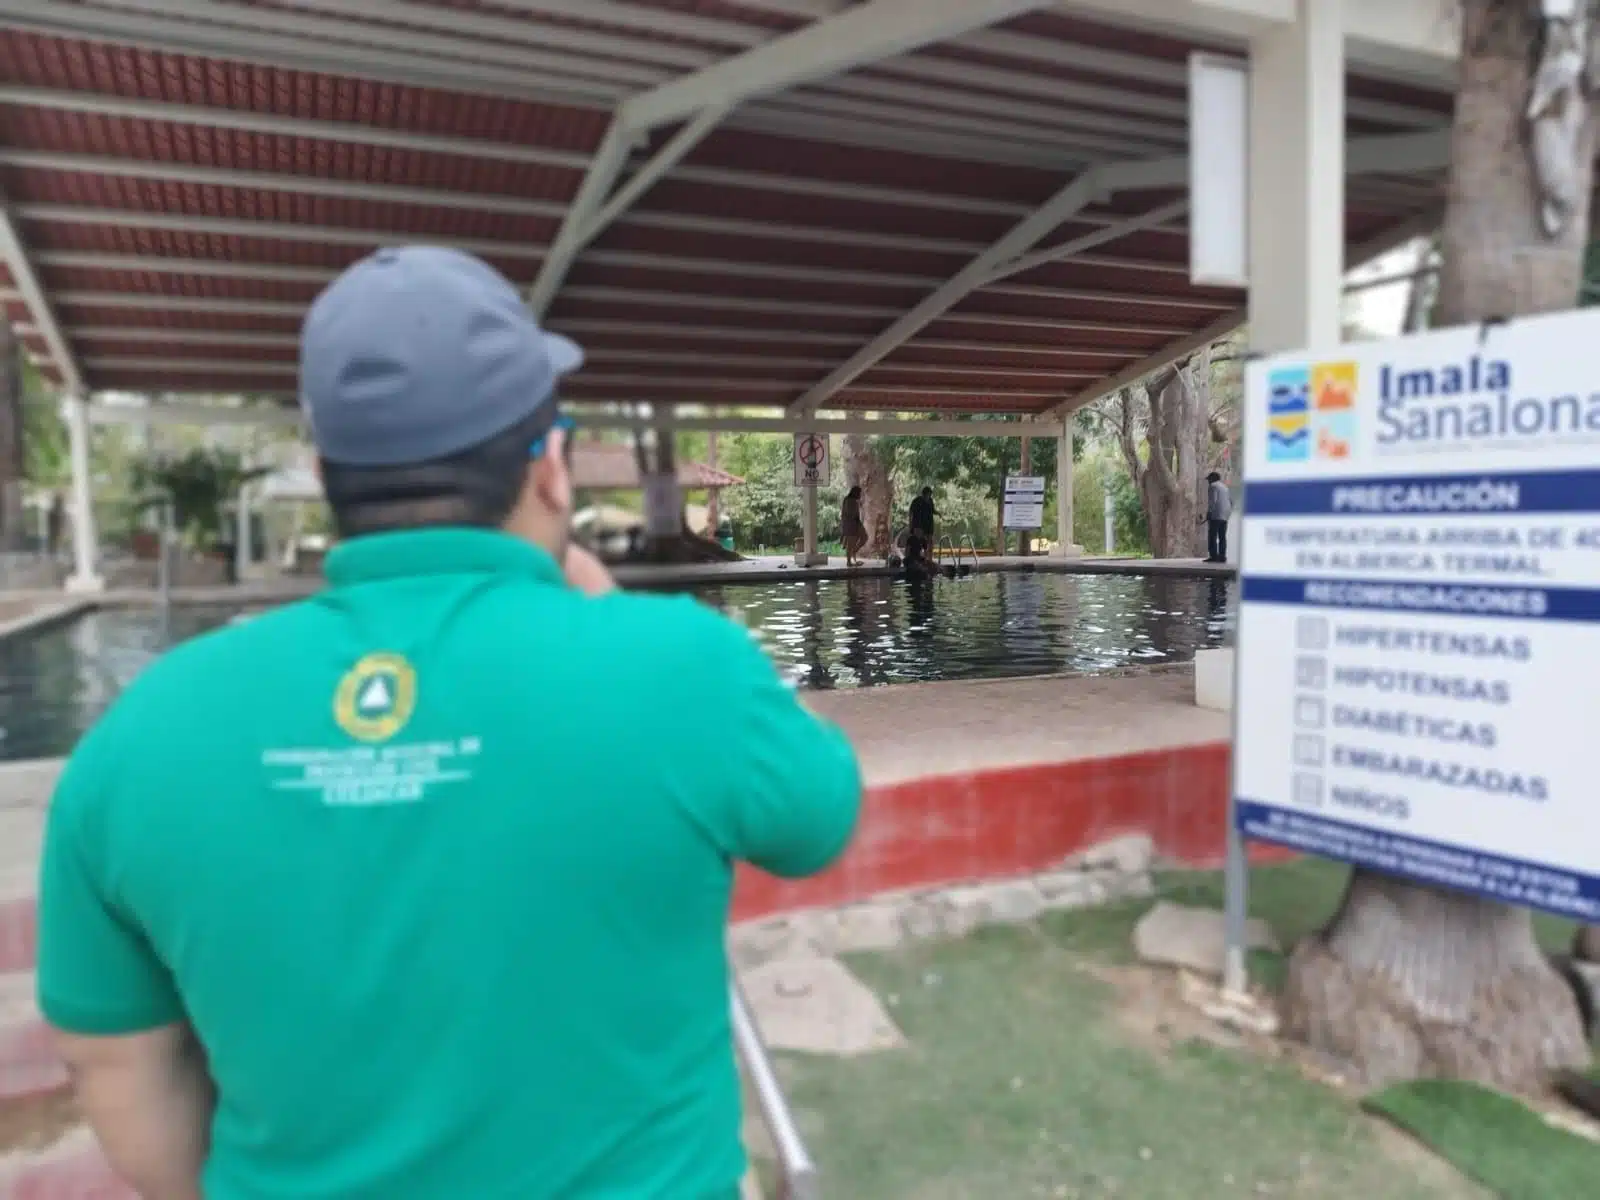 Elementos de Protección Civil en un balneario en Imala, Culiacán